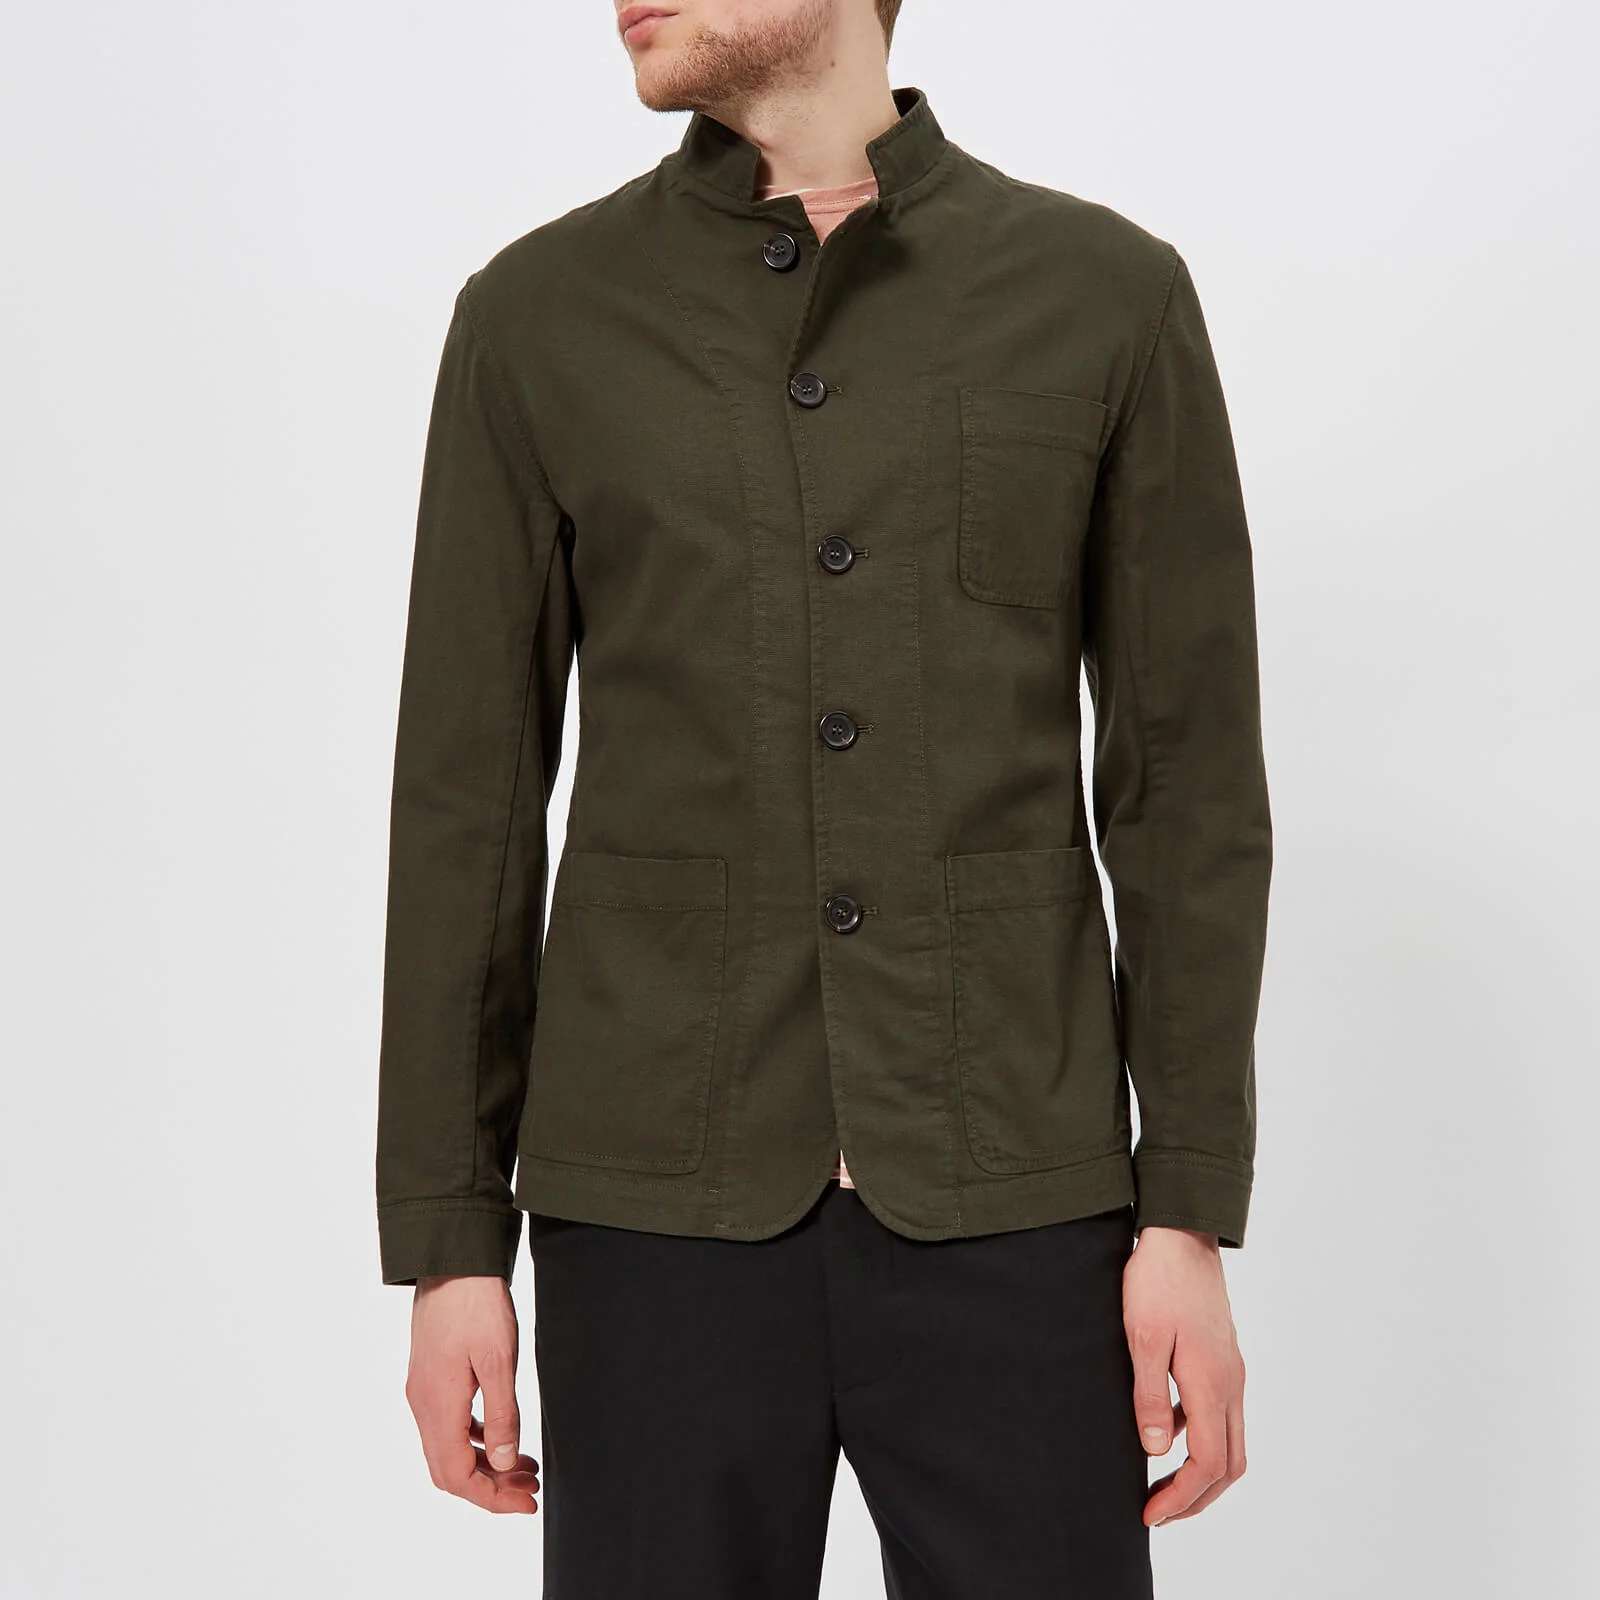 Oliver Spencer Men's Artist Jacket - Kildale Green Image 1